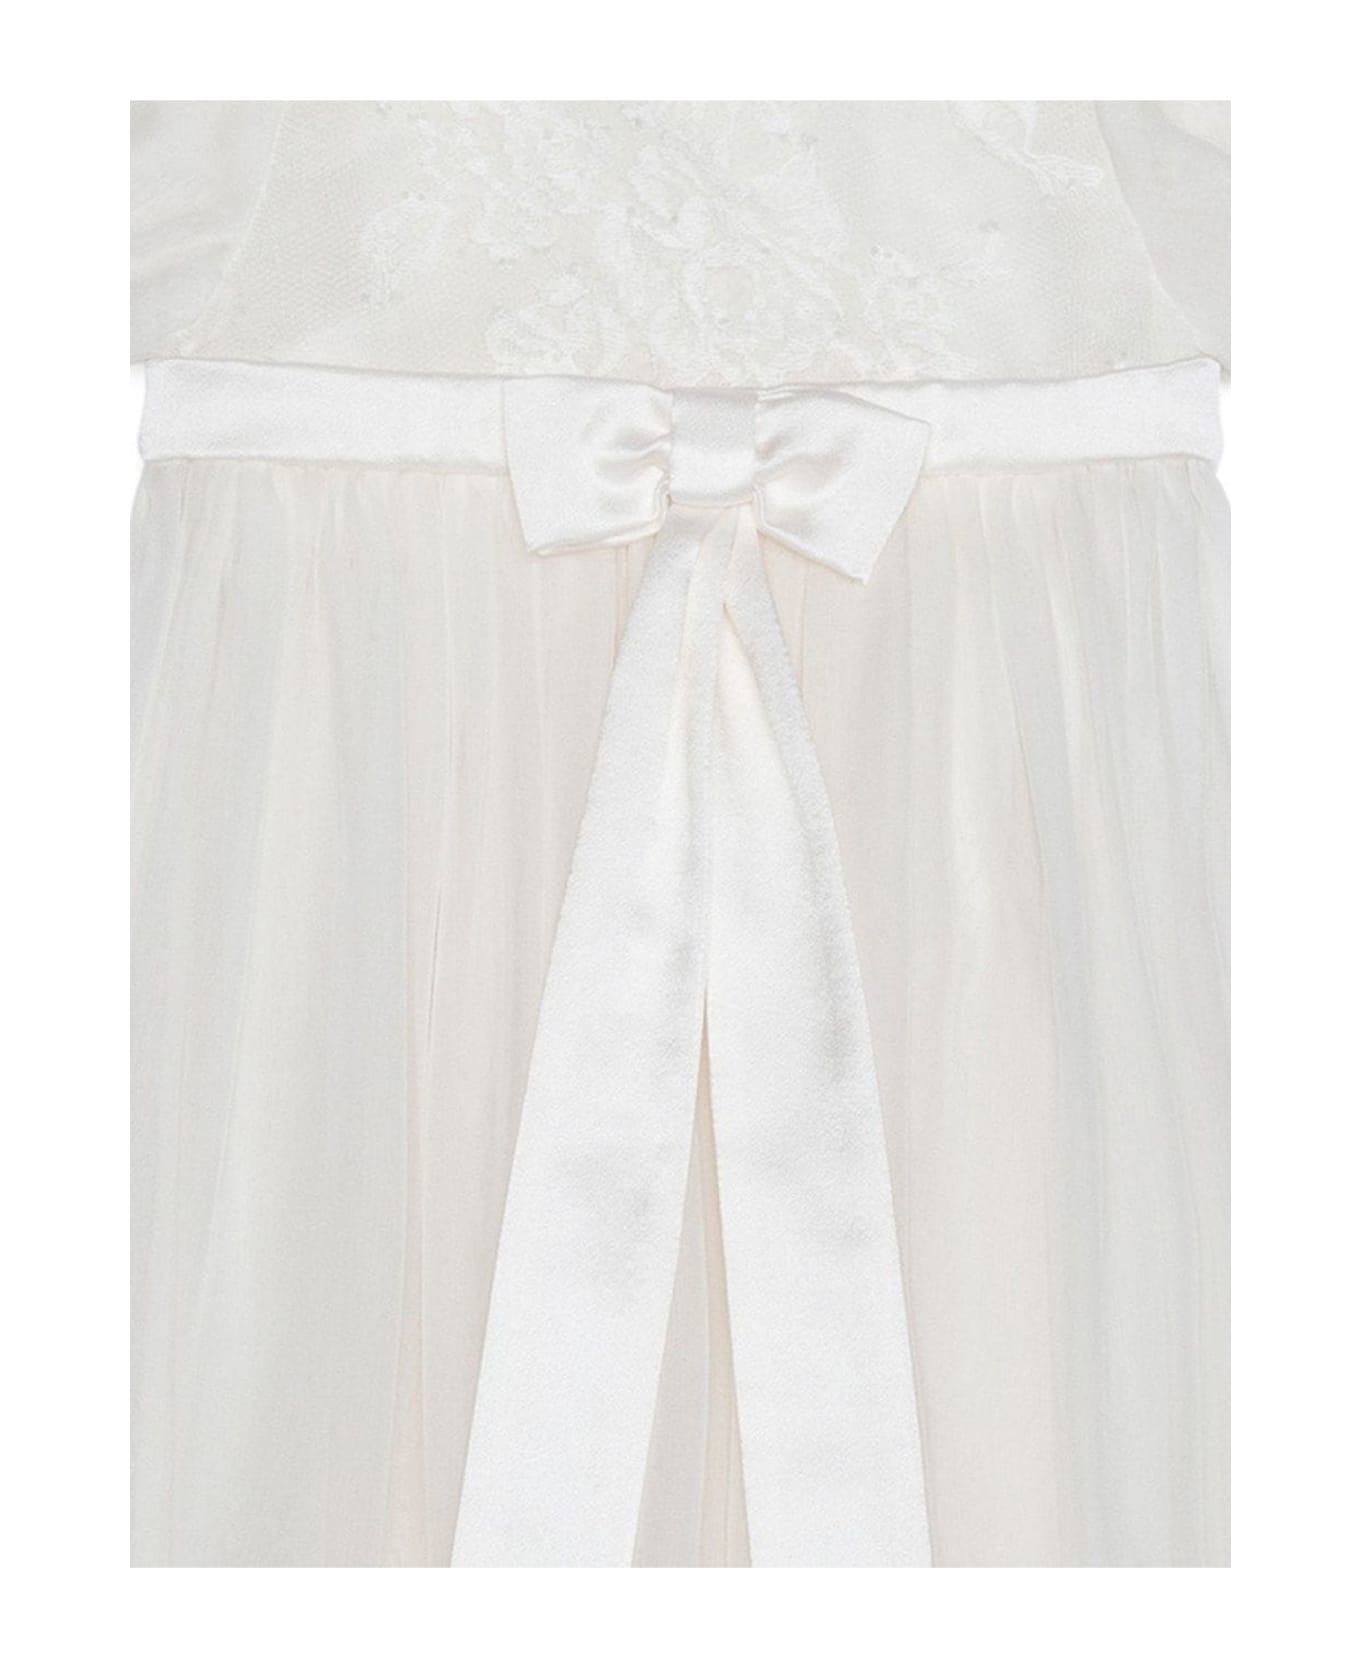 Dolce & Gabbana White Silk Dress - Bianco